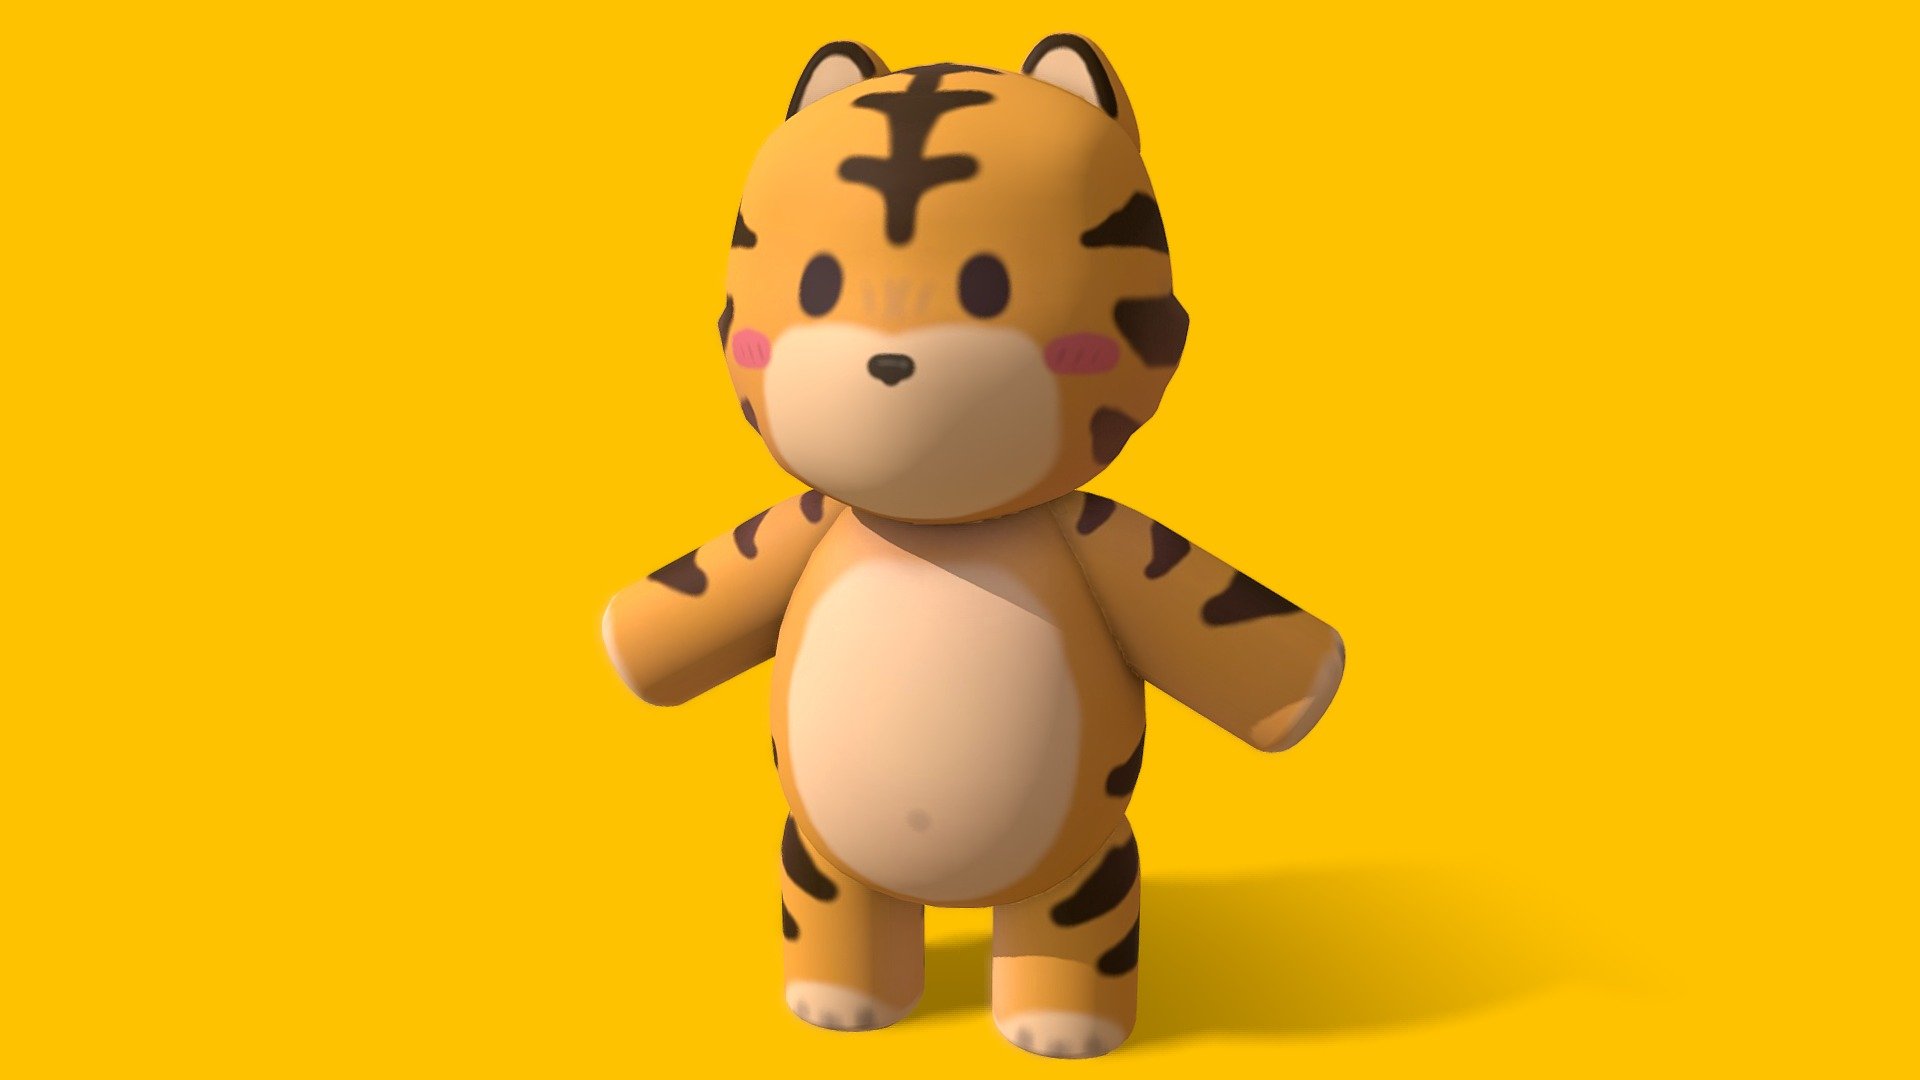 Low Poly Cute Tiger - 3D model by Hisqie Furqoni (@hisqiefurqoni) [23e0006]